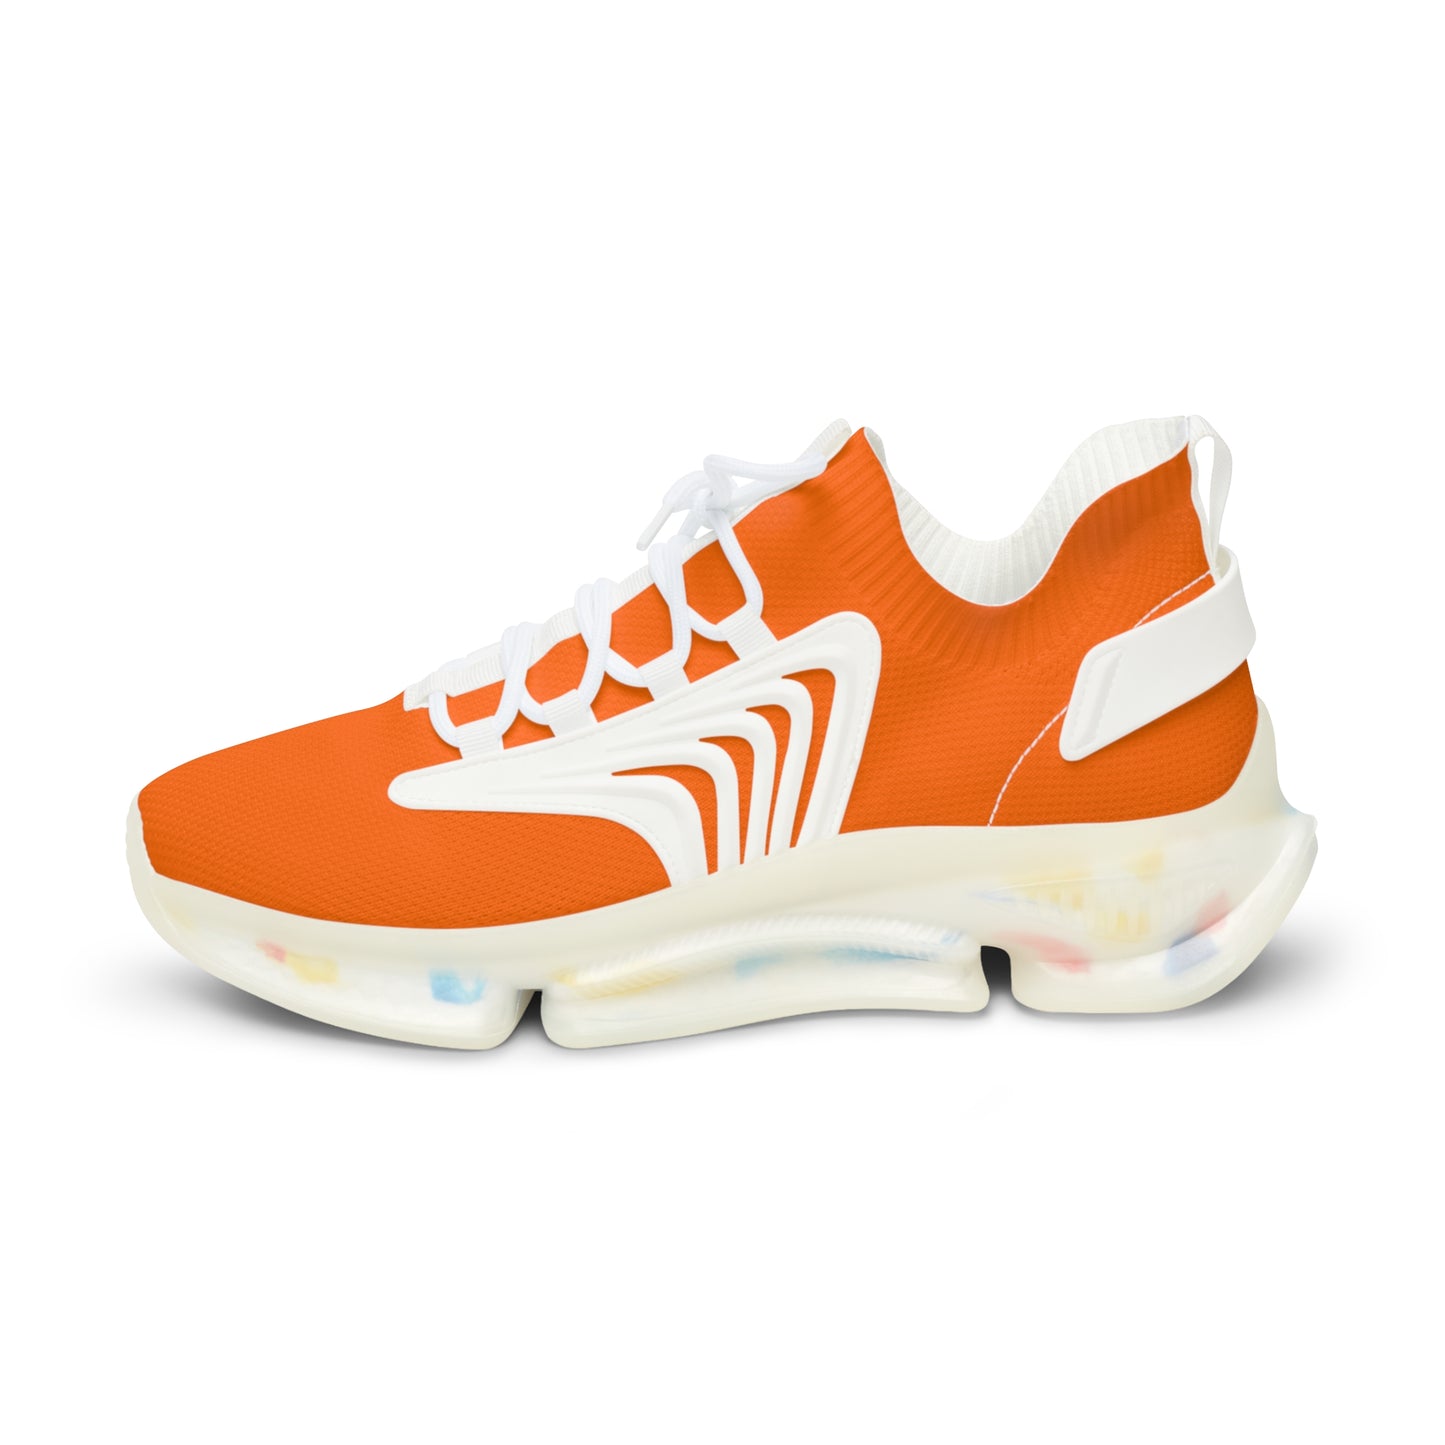 Neon Orange Mesh Sneakers